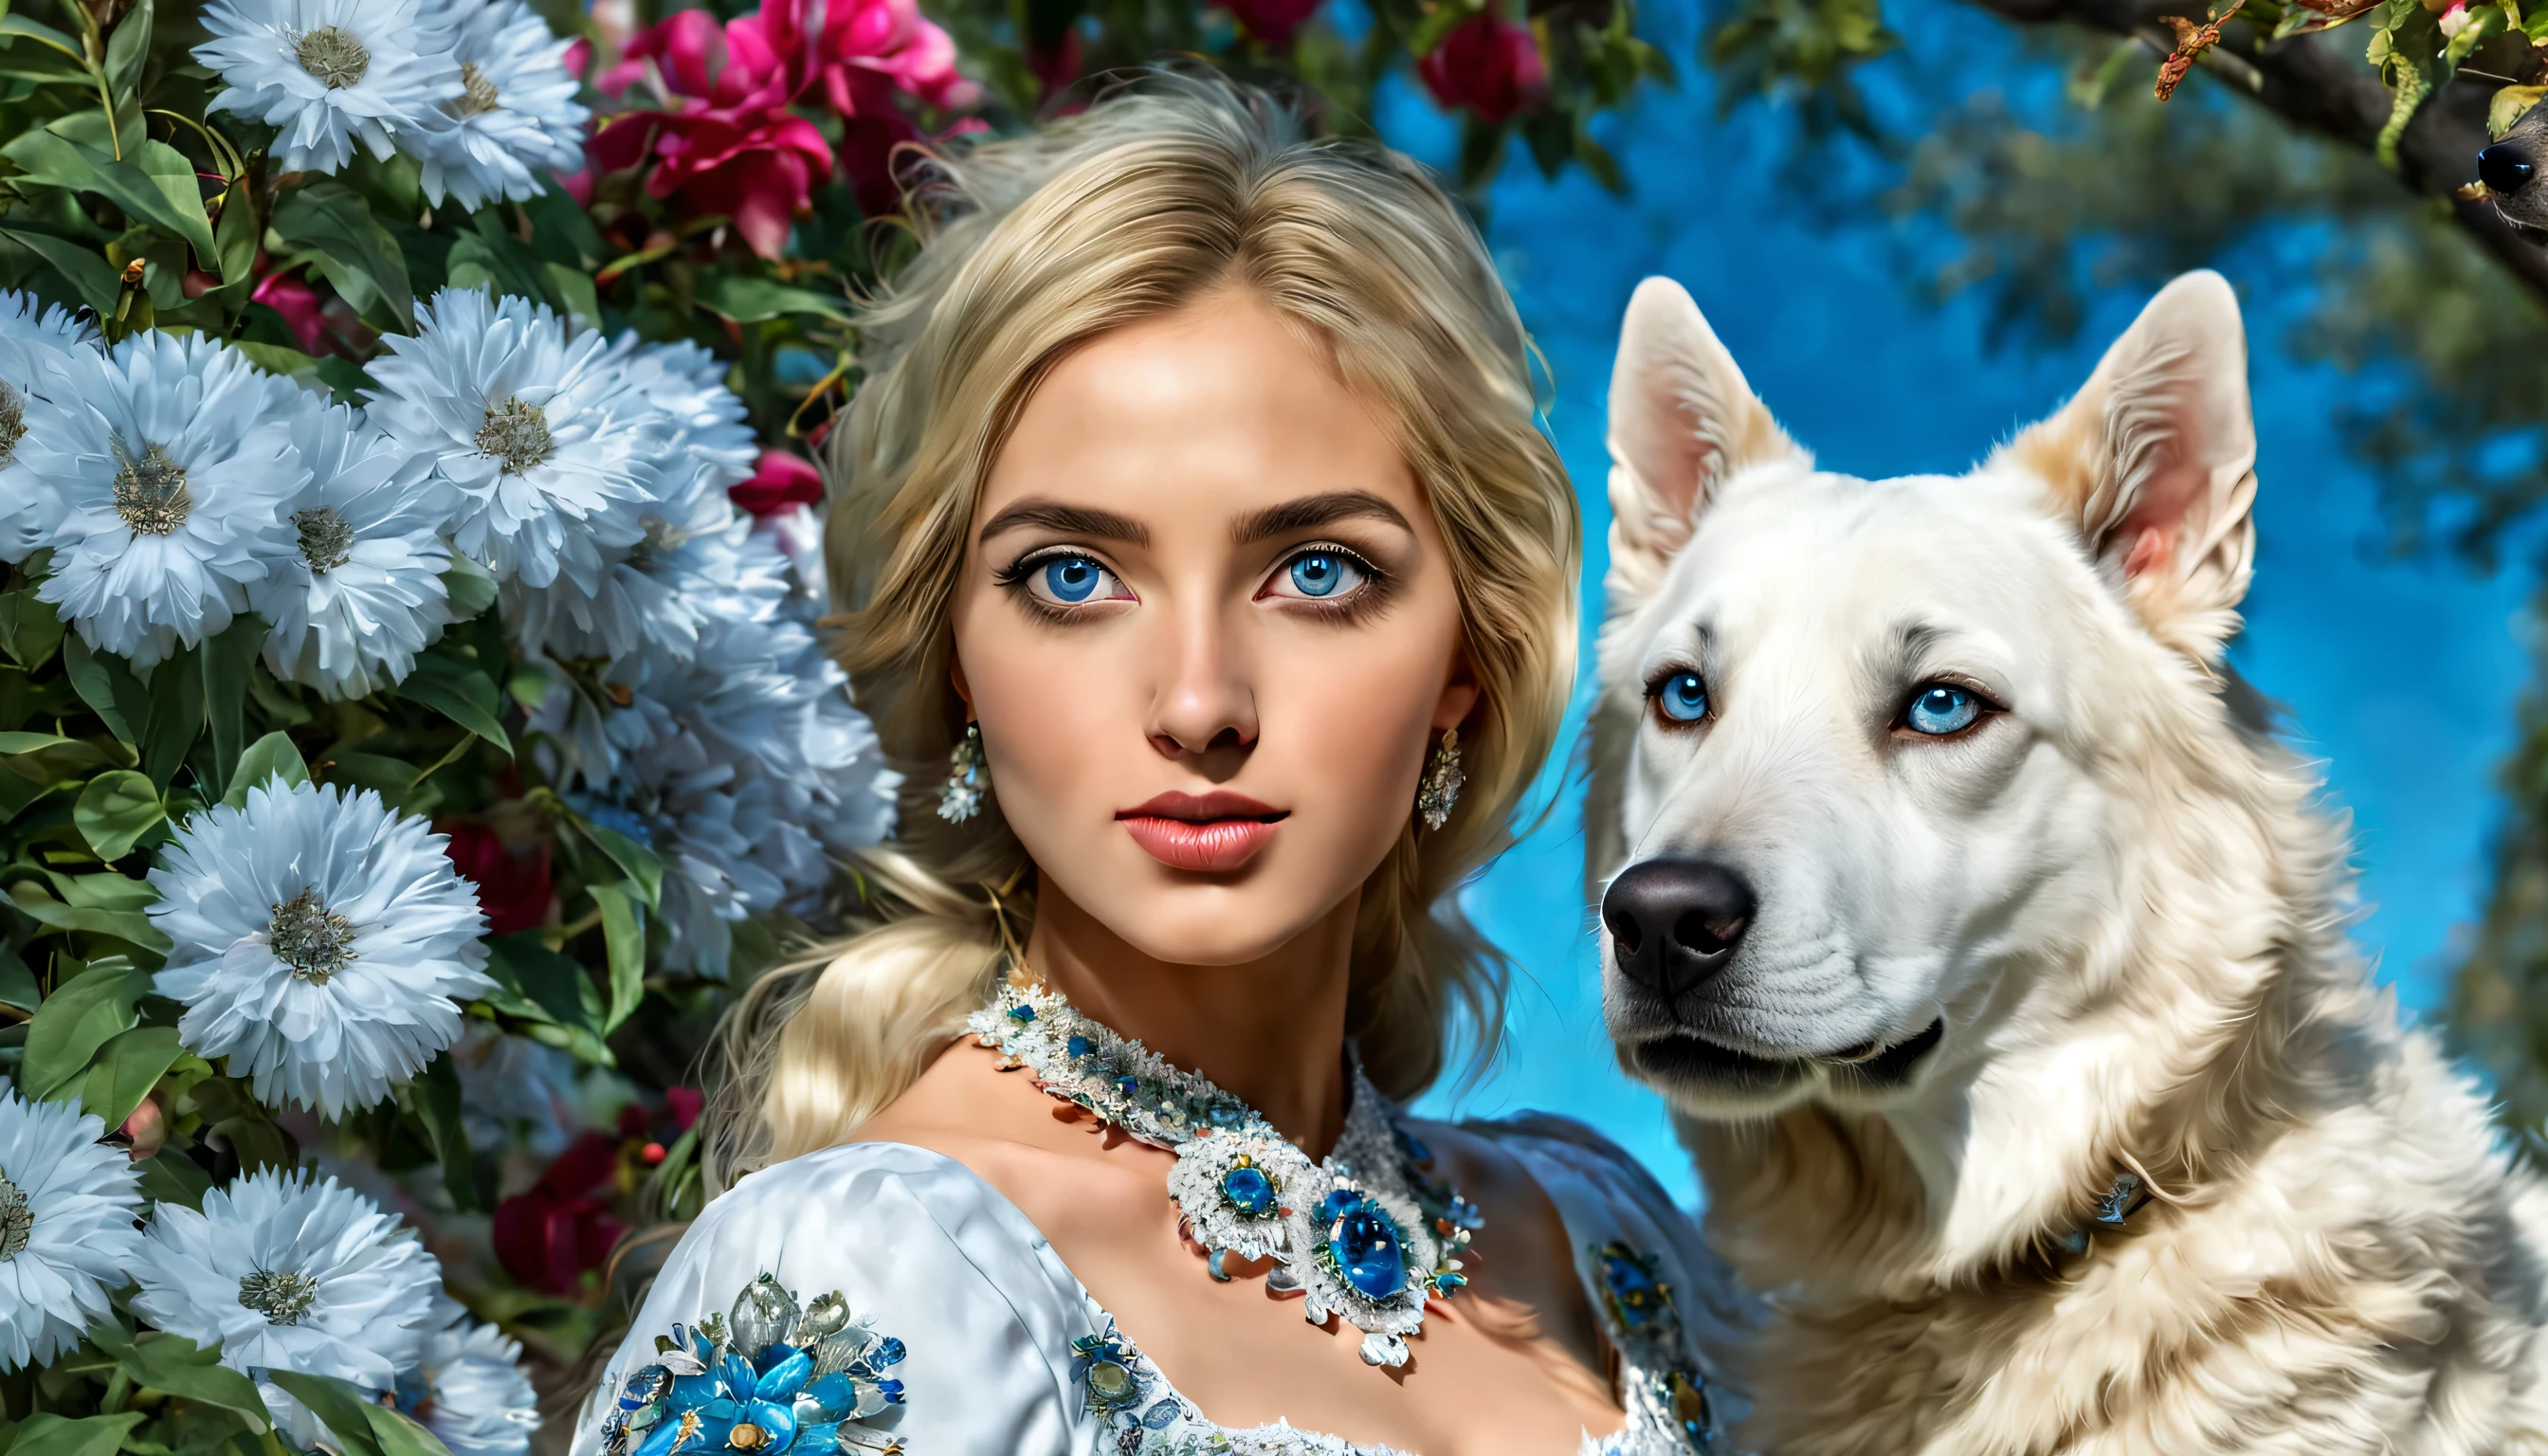 高解像度, 24k, デジタル, リアリズム, トルコの女の子, 異常な美しさ, 大きな青い目, 美しい25歳, 緑豊かな, トルコのドレス, 花畑で, 大きなトルコの木, 白いカンガル犬, 美しい細部, 二 